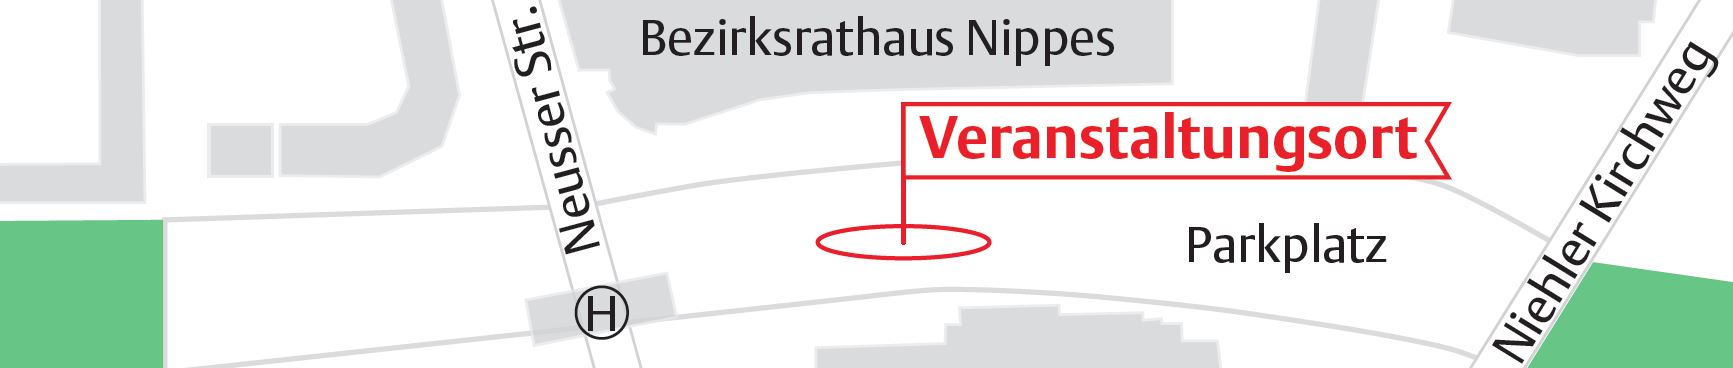 Karte des Treffpunkts für Veranstaltung am 23.05.2022. Der Veranstaltungsort liegt zwischen dem Bezirksrathaus Nippes und dem Parkplaz.